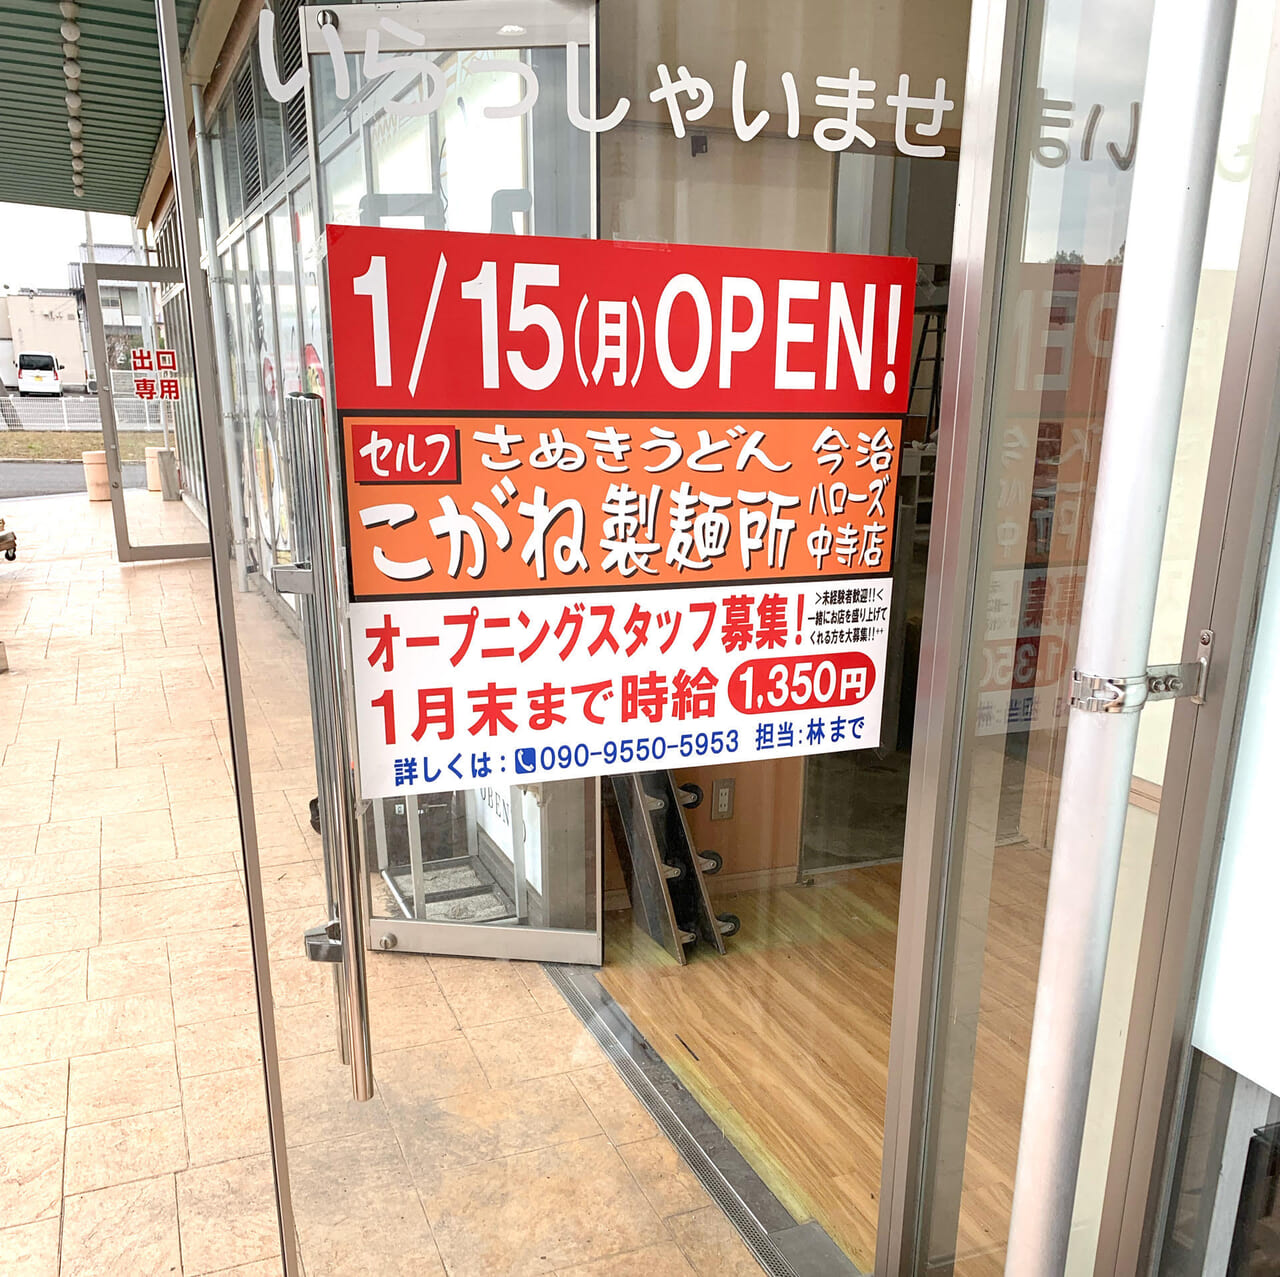 「こがね製麺所」が中寺にあった「がんば食堂 今治店」の跡地に2店舗目をオープン予定!!